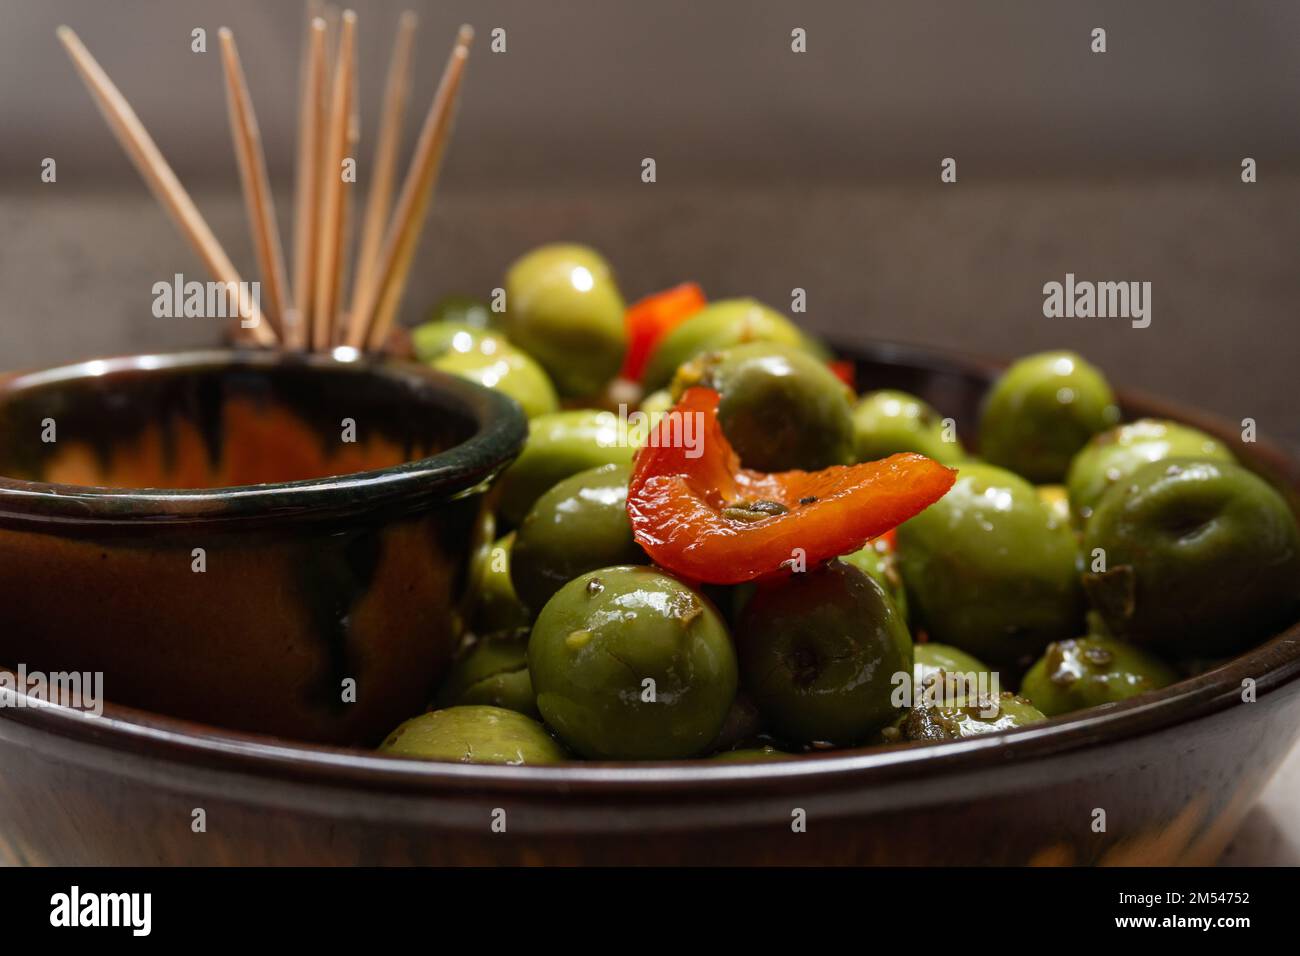 Un primo piano di una ciotola di aceitunas, olive verdi e peperoni tagliati che brilla da una superficie oleosa Foto Stock